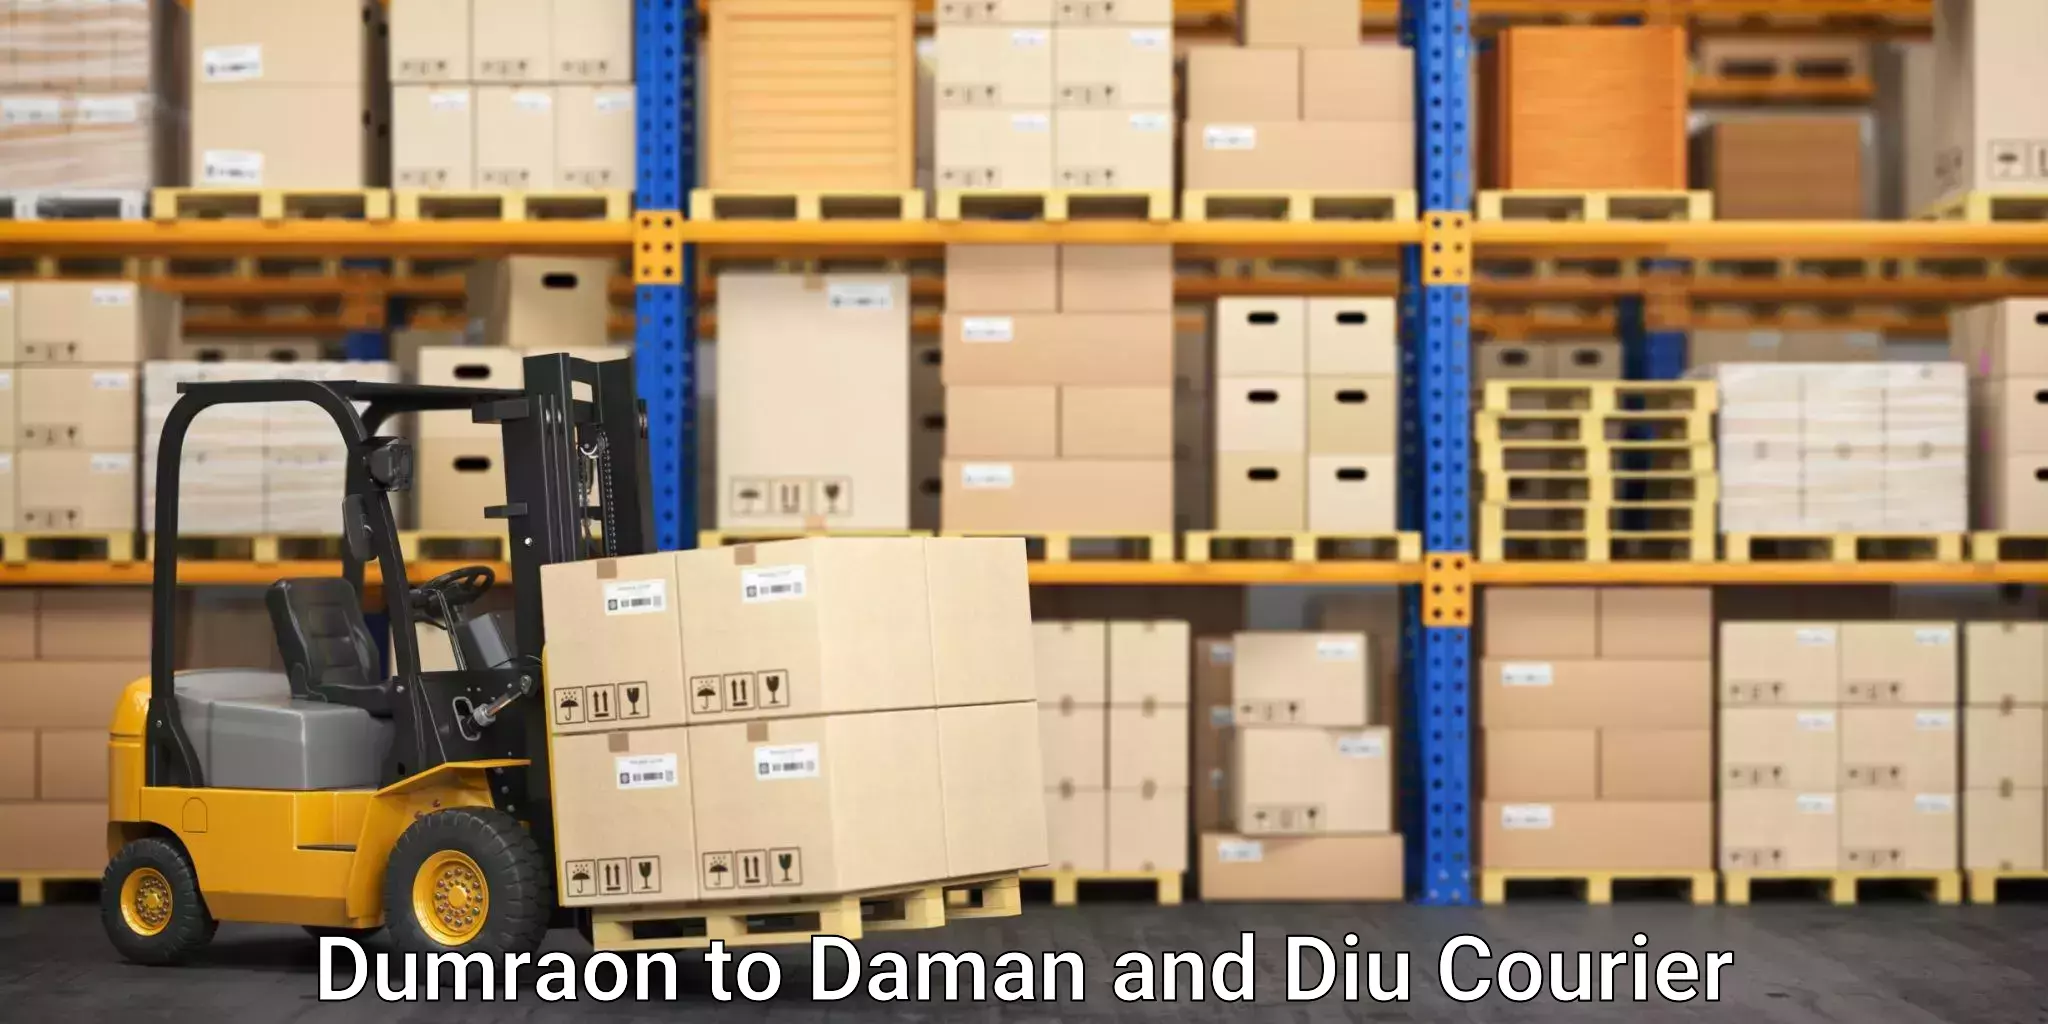 Furniture transport service Dumraon to Daman and Diu